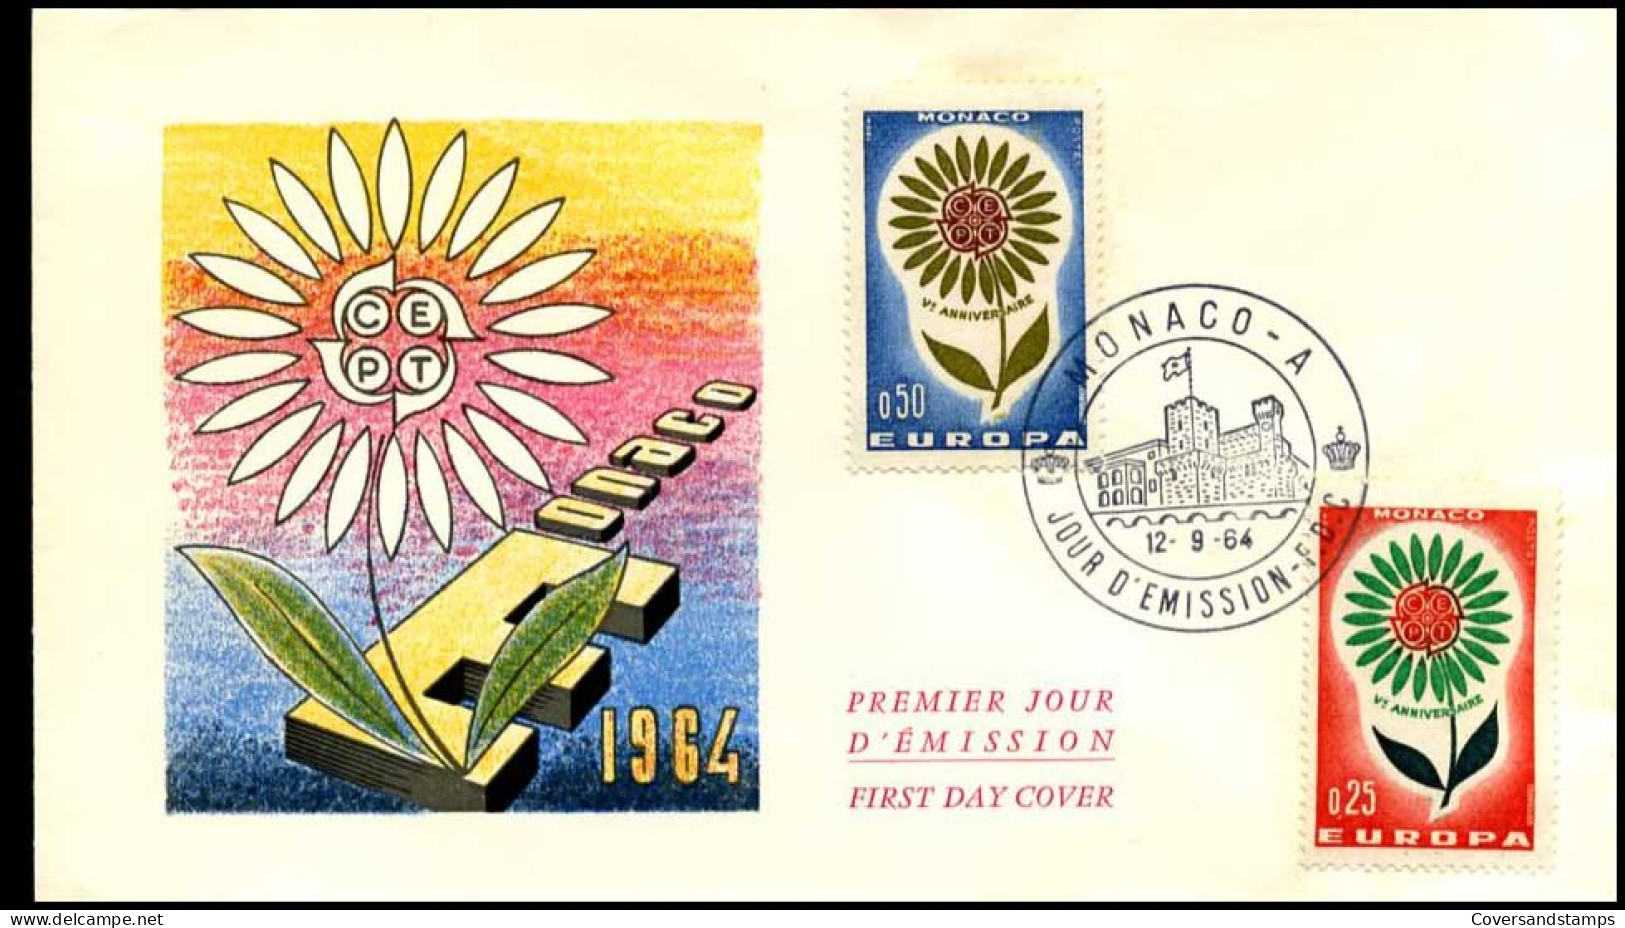  Monaco - FDC - Europa CEPT 1964 - 1964